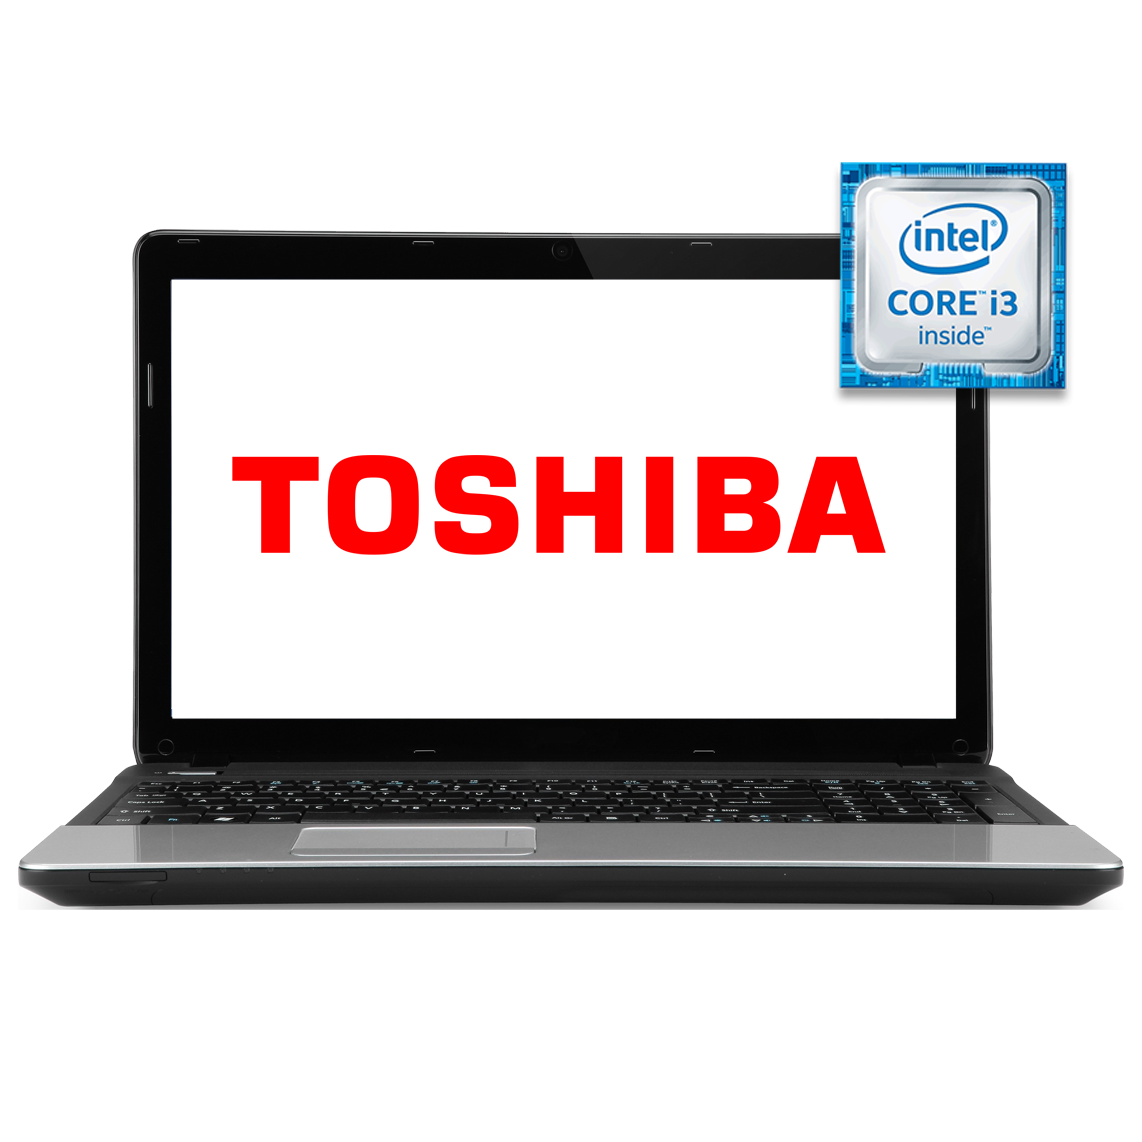 Toshiba - 13 inch Core i3 4th Gen